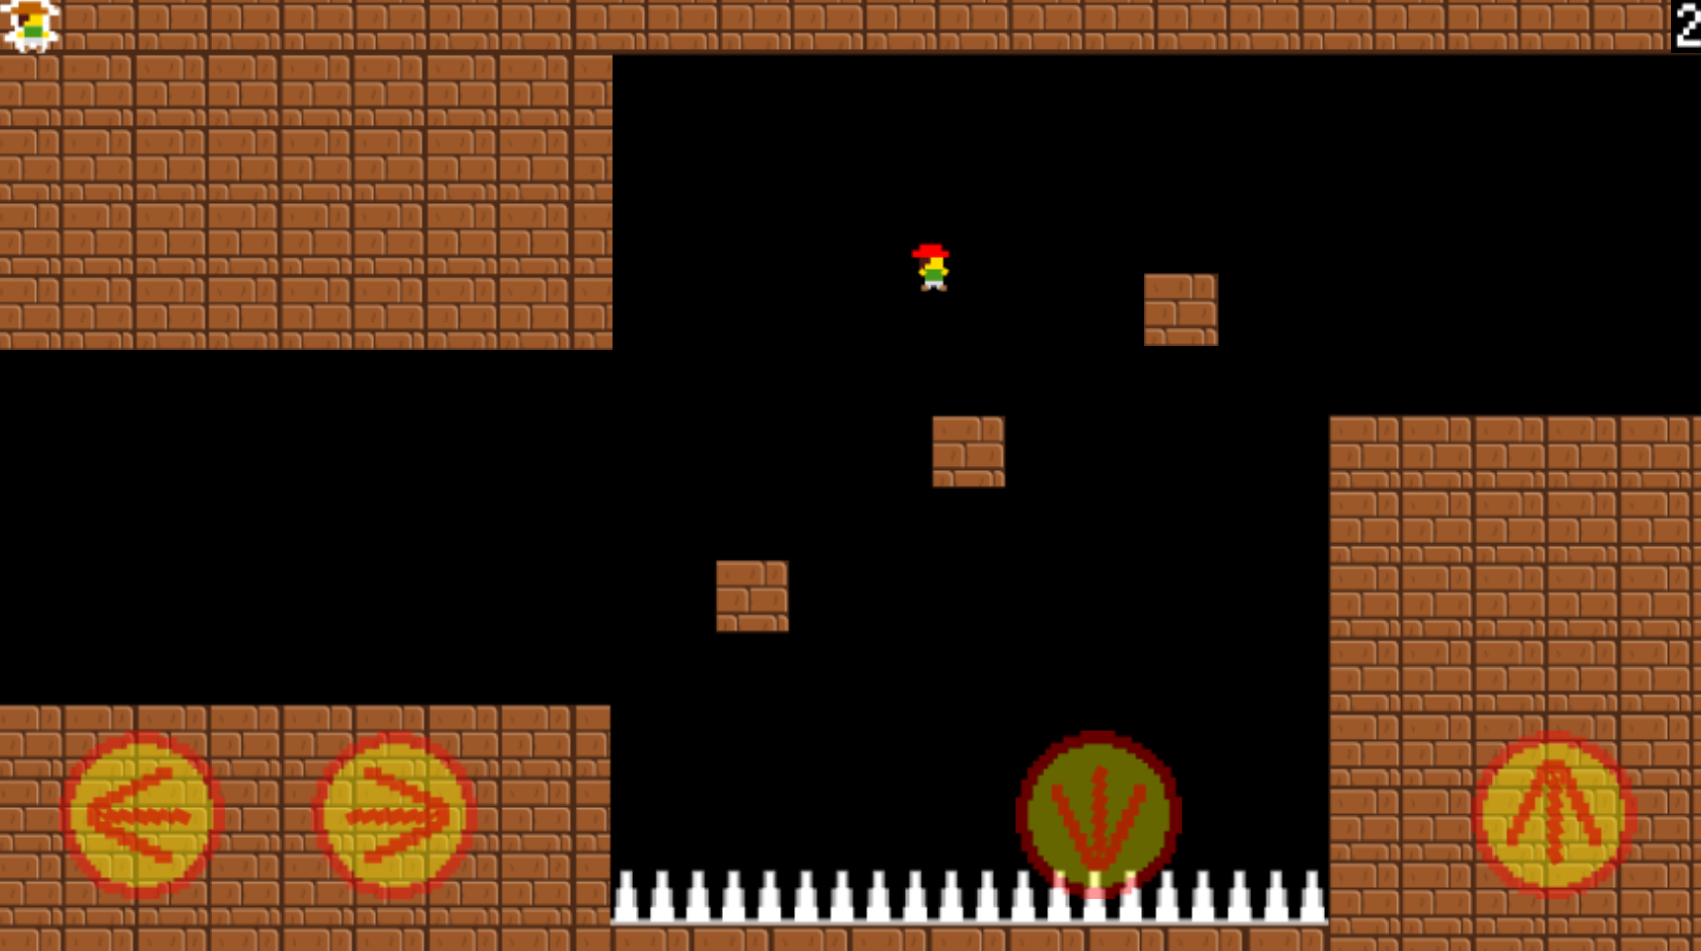 Screenshot 1 of トラップインポッシブル2 - ゲーム 1.0.0